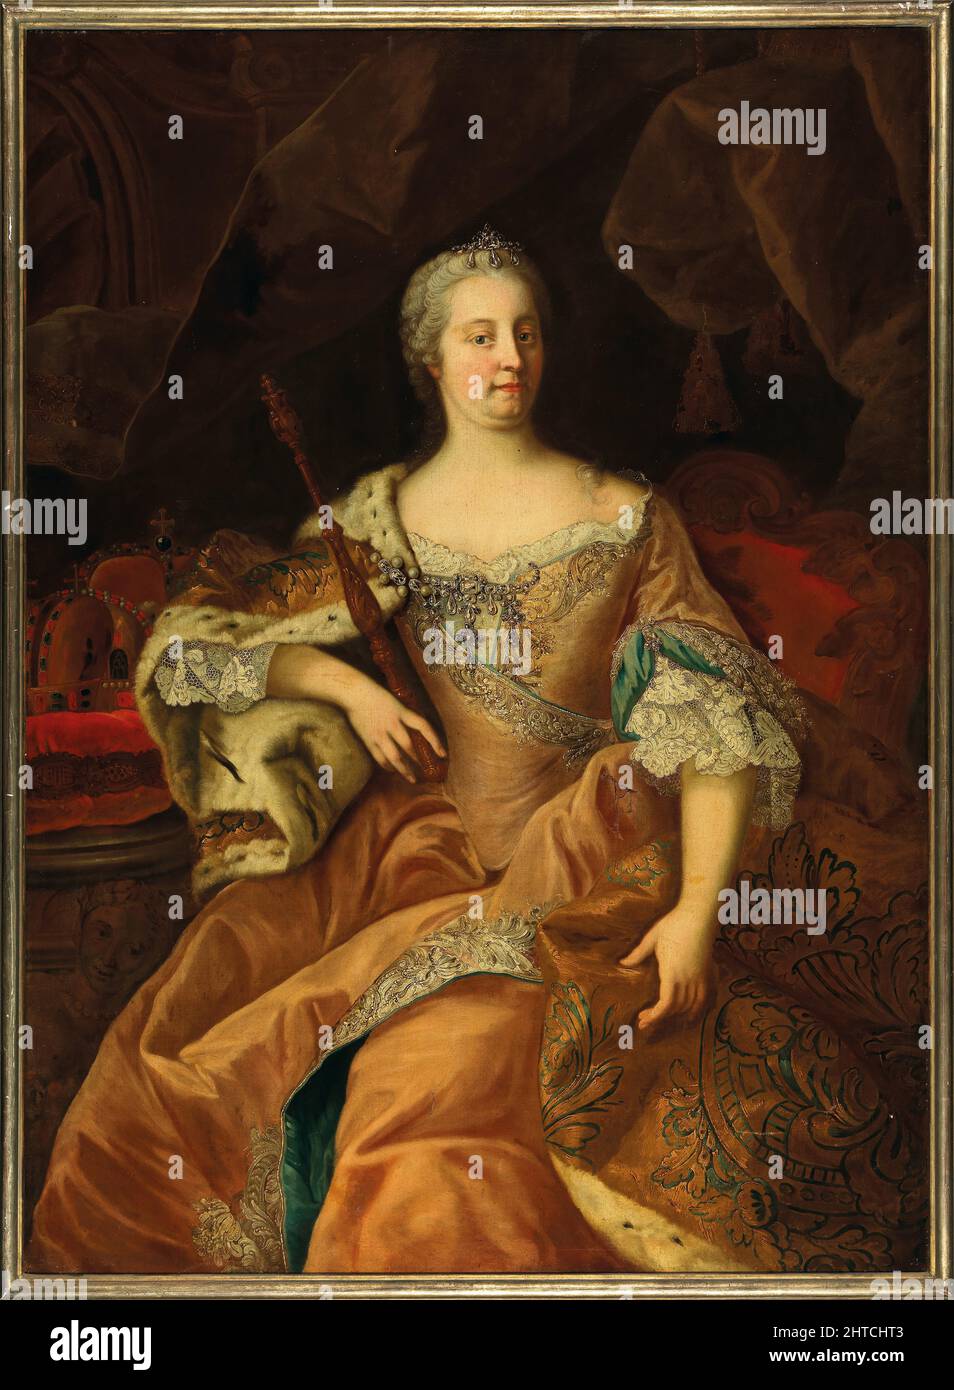 Ritratto dell'imperatrice Maria Theresia (1717-1780), come Regina d'Ungheria e Boemia. Collezione privata. Foto Stock